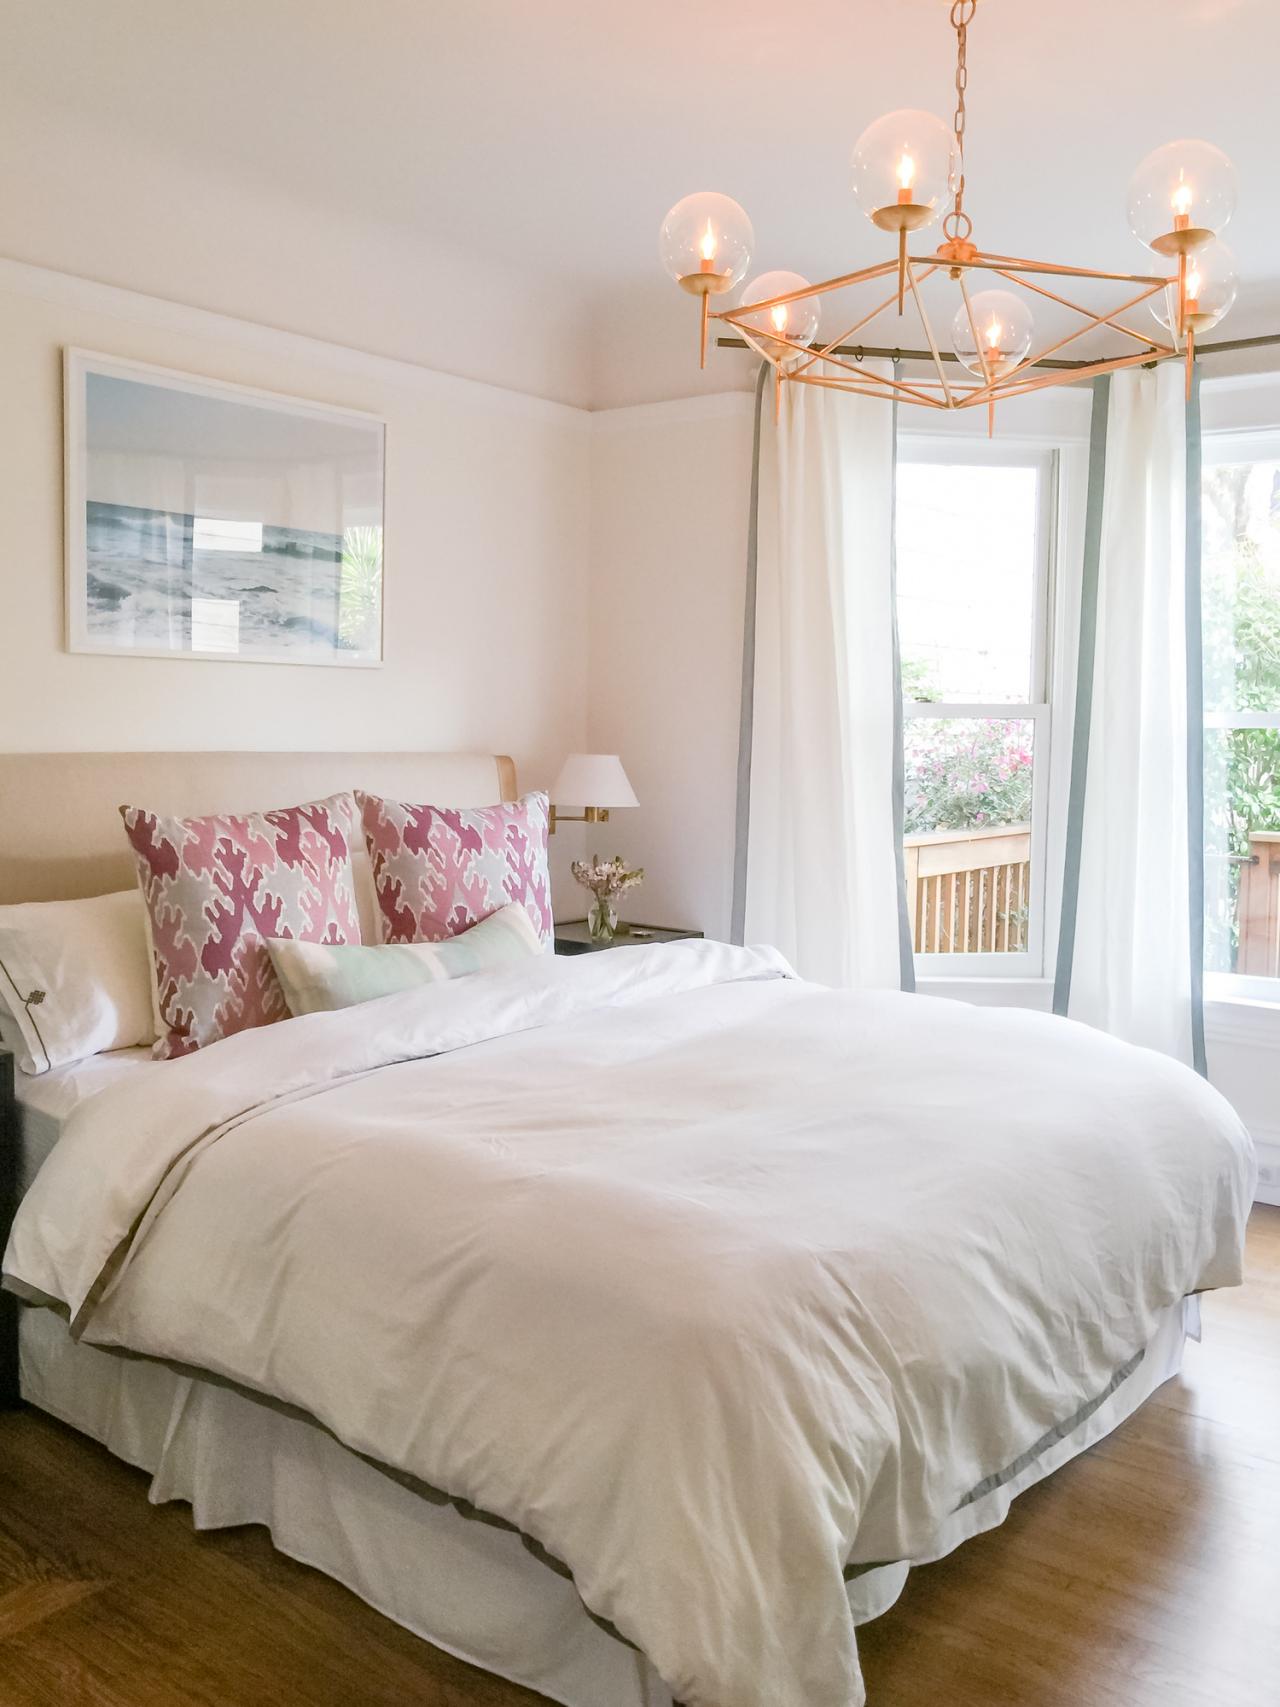 Serene Bedroom in Cream and White HGTV